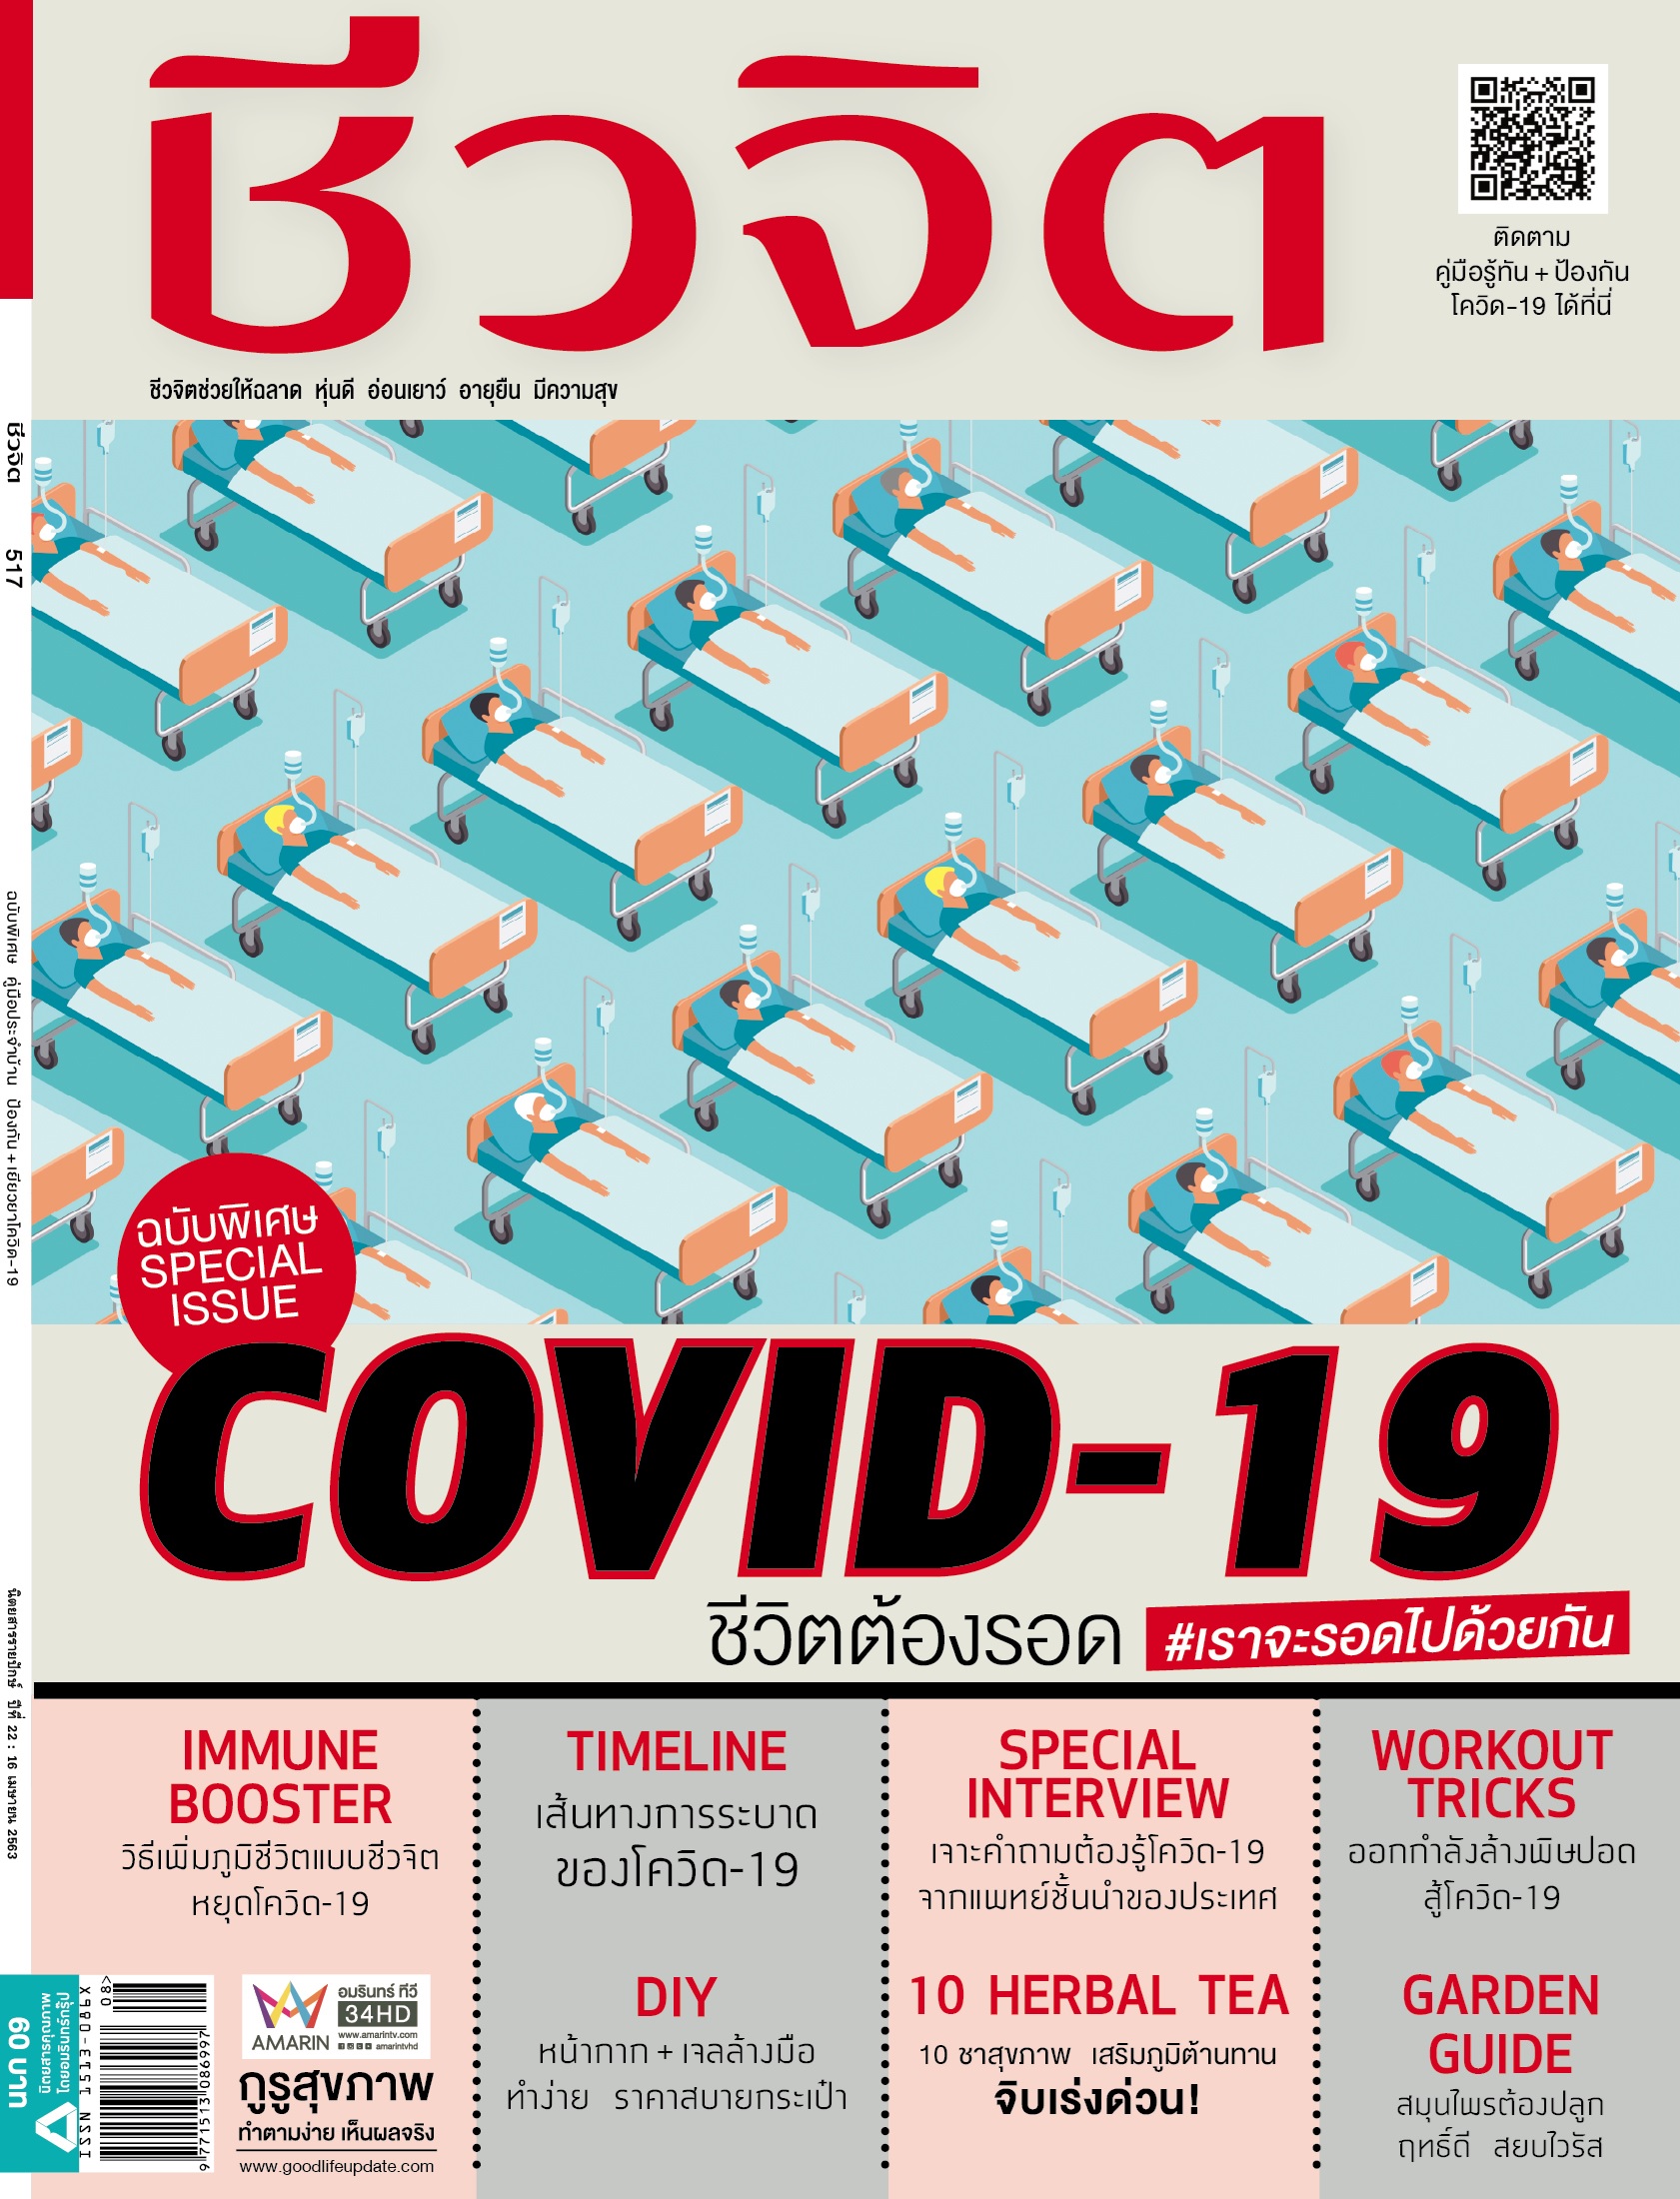 ชีวจิต นิตยสารชีวจิต นิตยสารสุขภาพ โควิด-19 COVID-19 โควิด19 โควิด